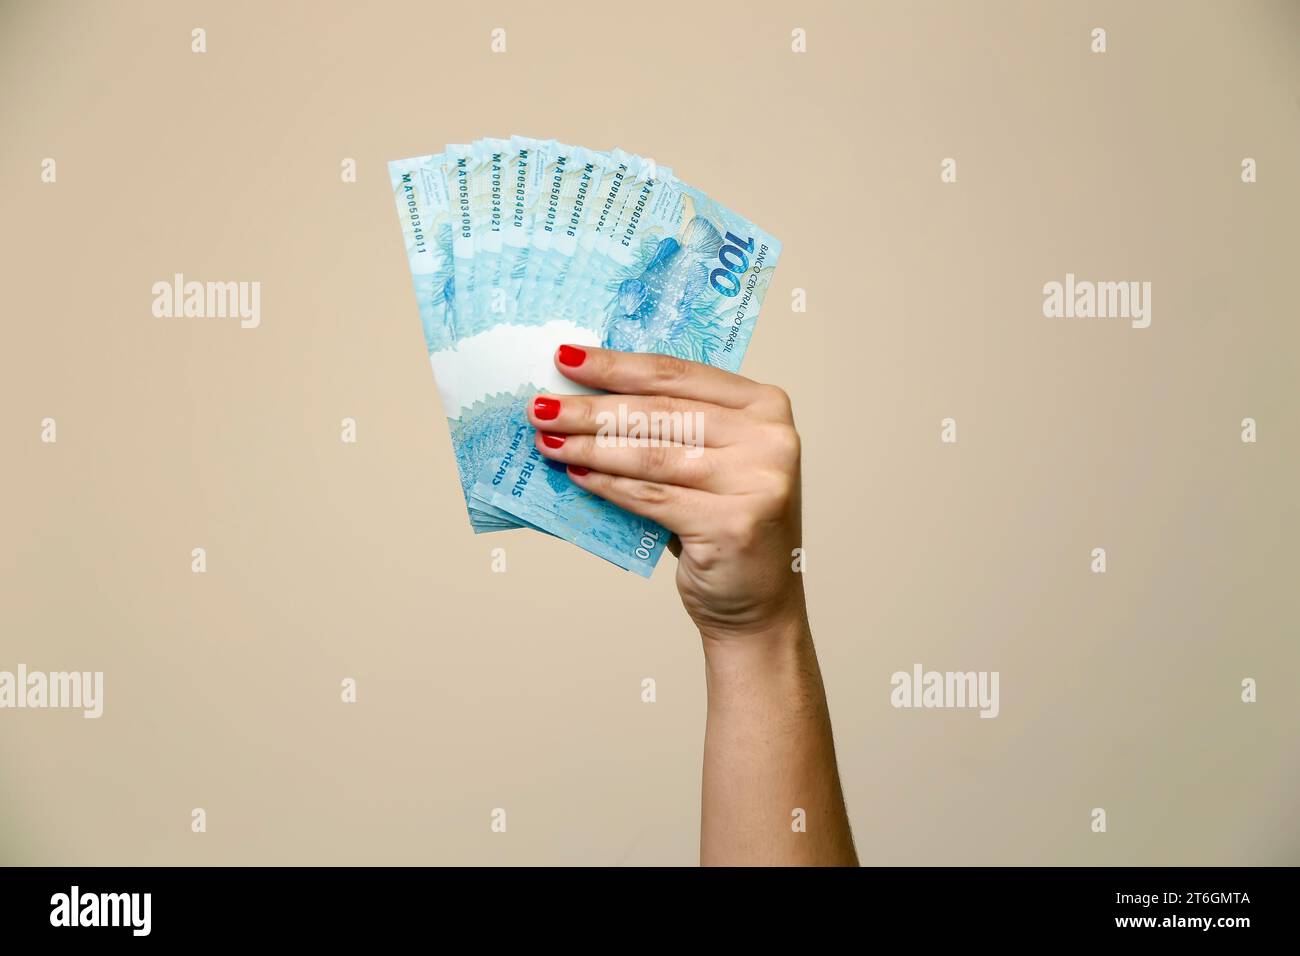 Plusieurs centaines de billets réels - de l'argent du Brésil dans une main de femme avec des ongles rouges - dos de note Banque D'Images